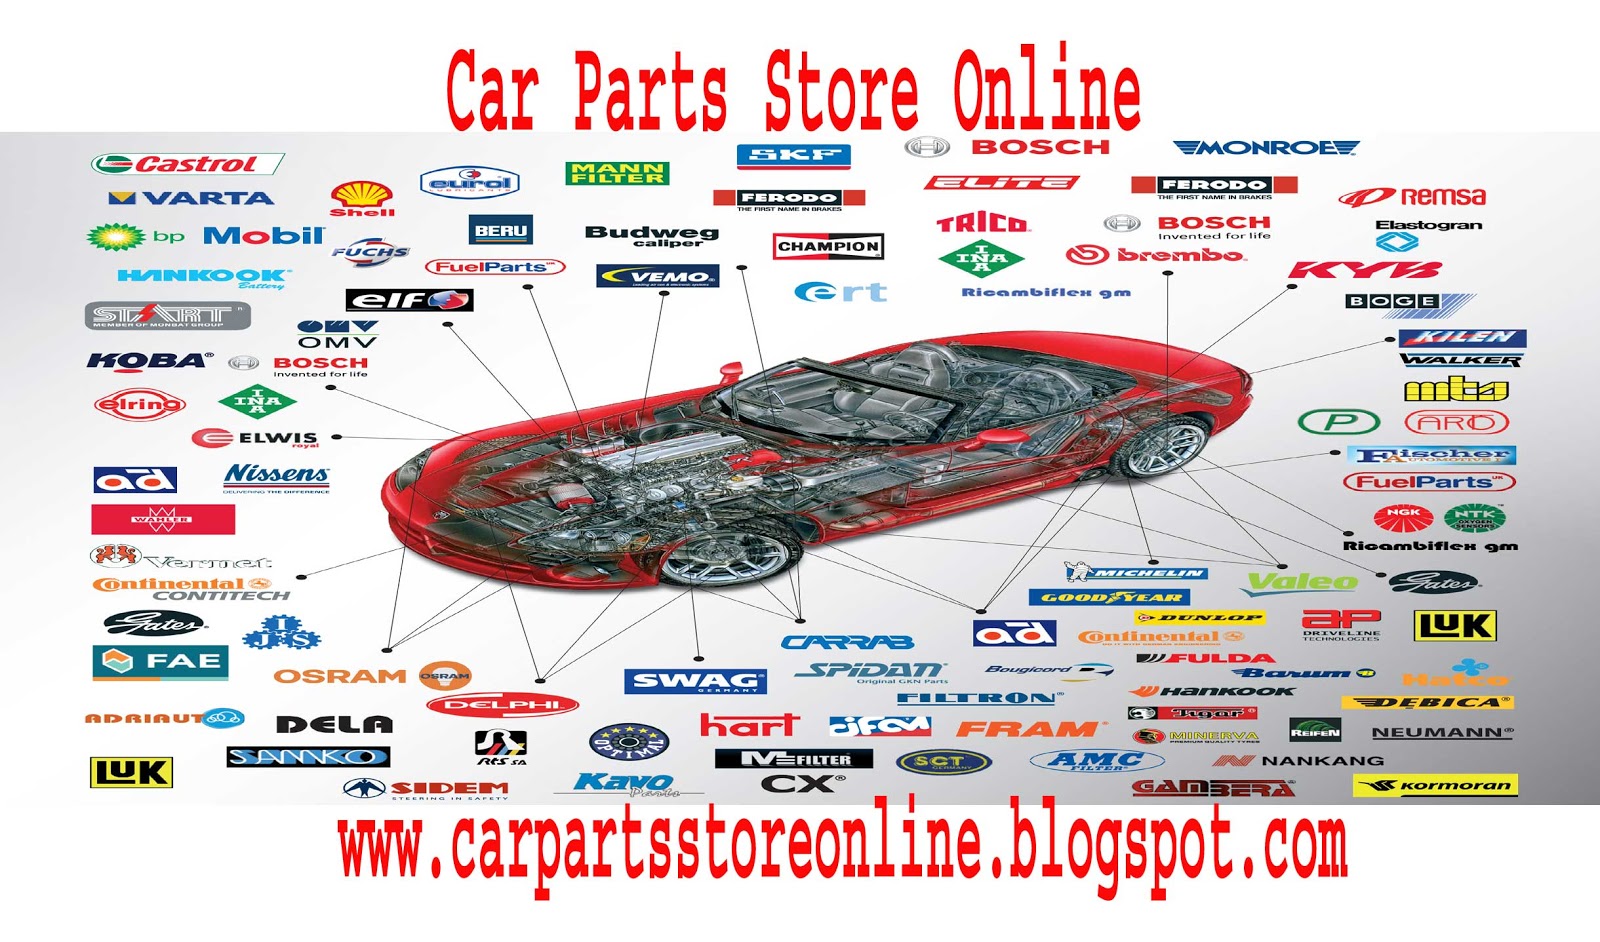 Car Parts Store Online: Car Parts Store Online,car parts, part of a car